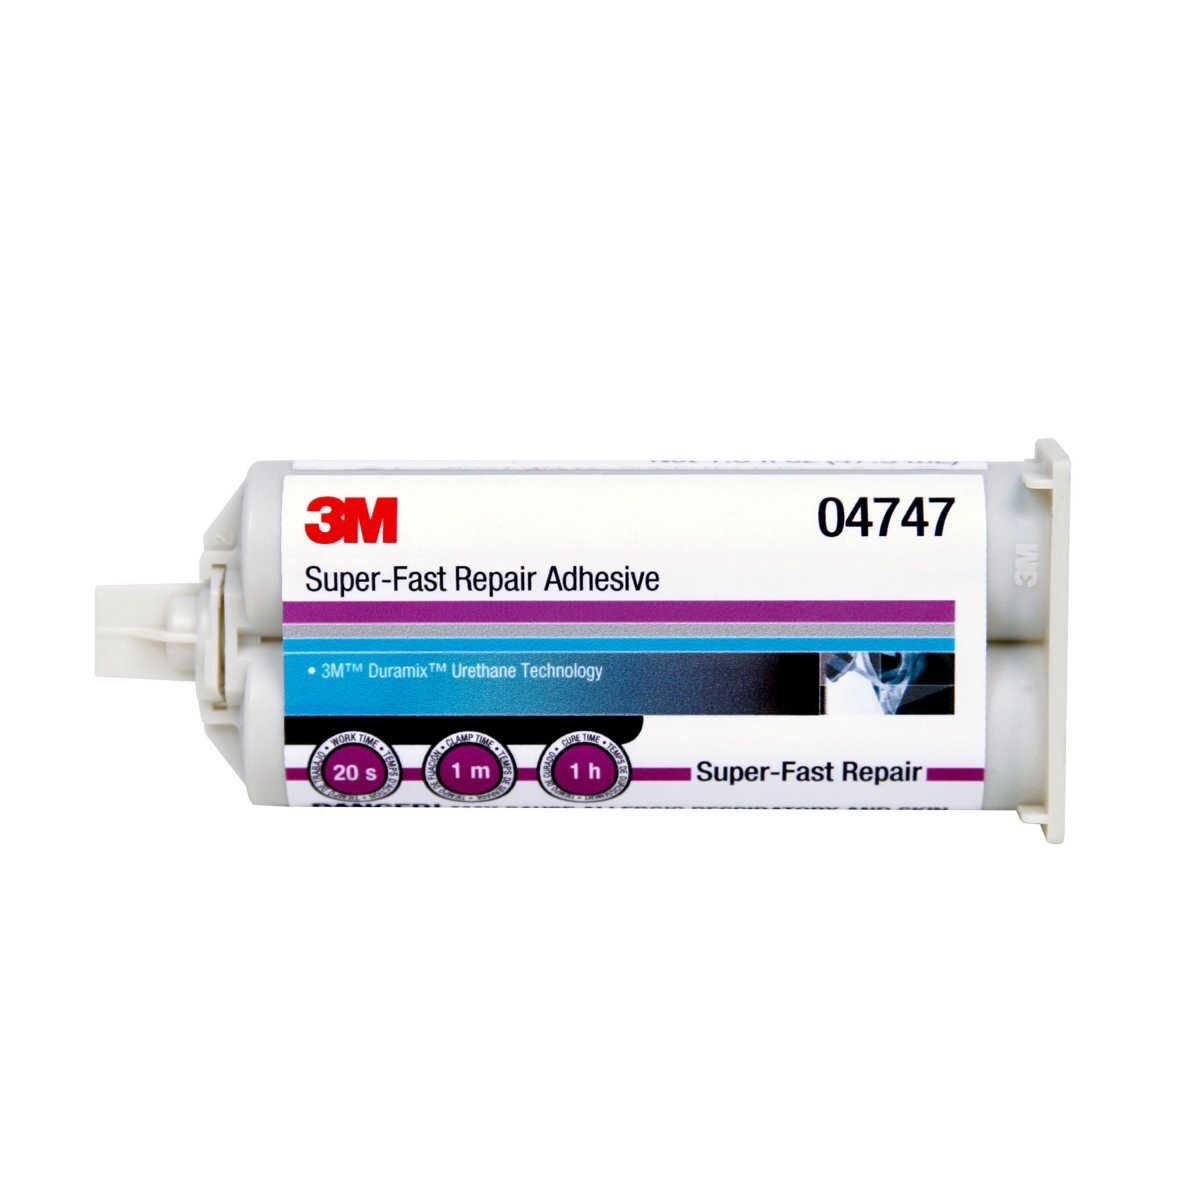 3M™ Super-Fast Repair Adhesive, 04747, Amber, 47.3 mL Cartridge